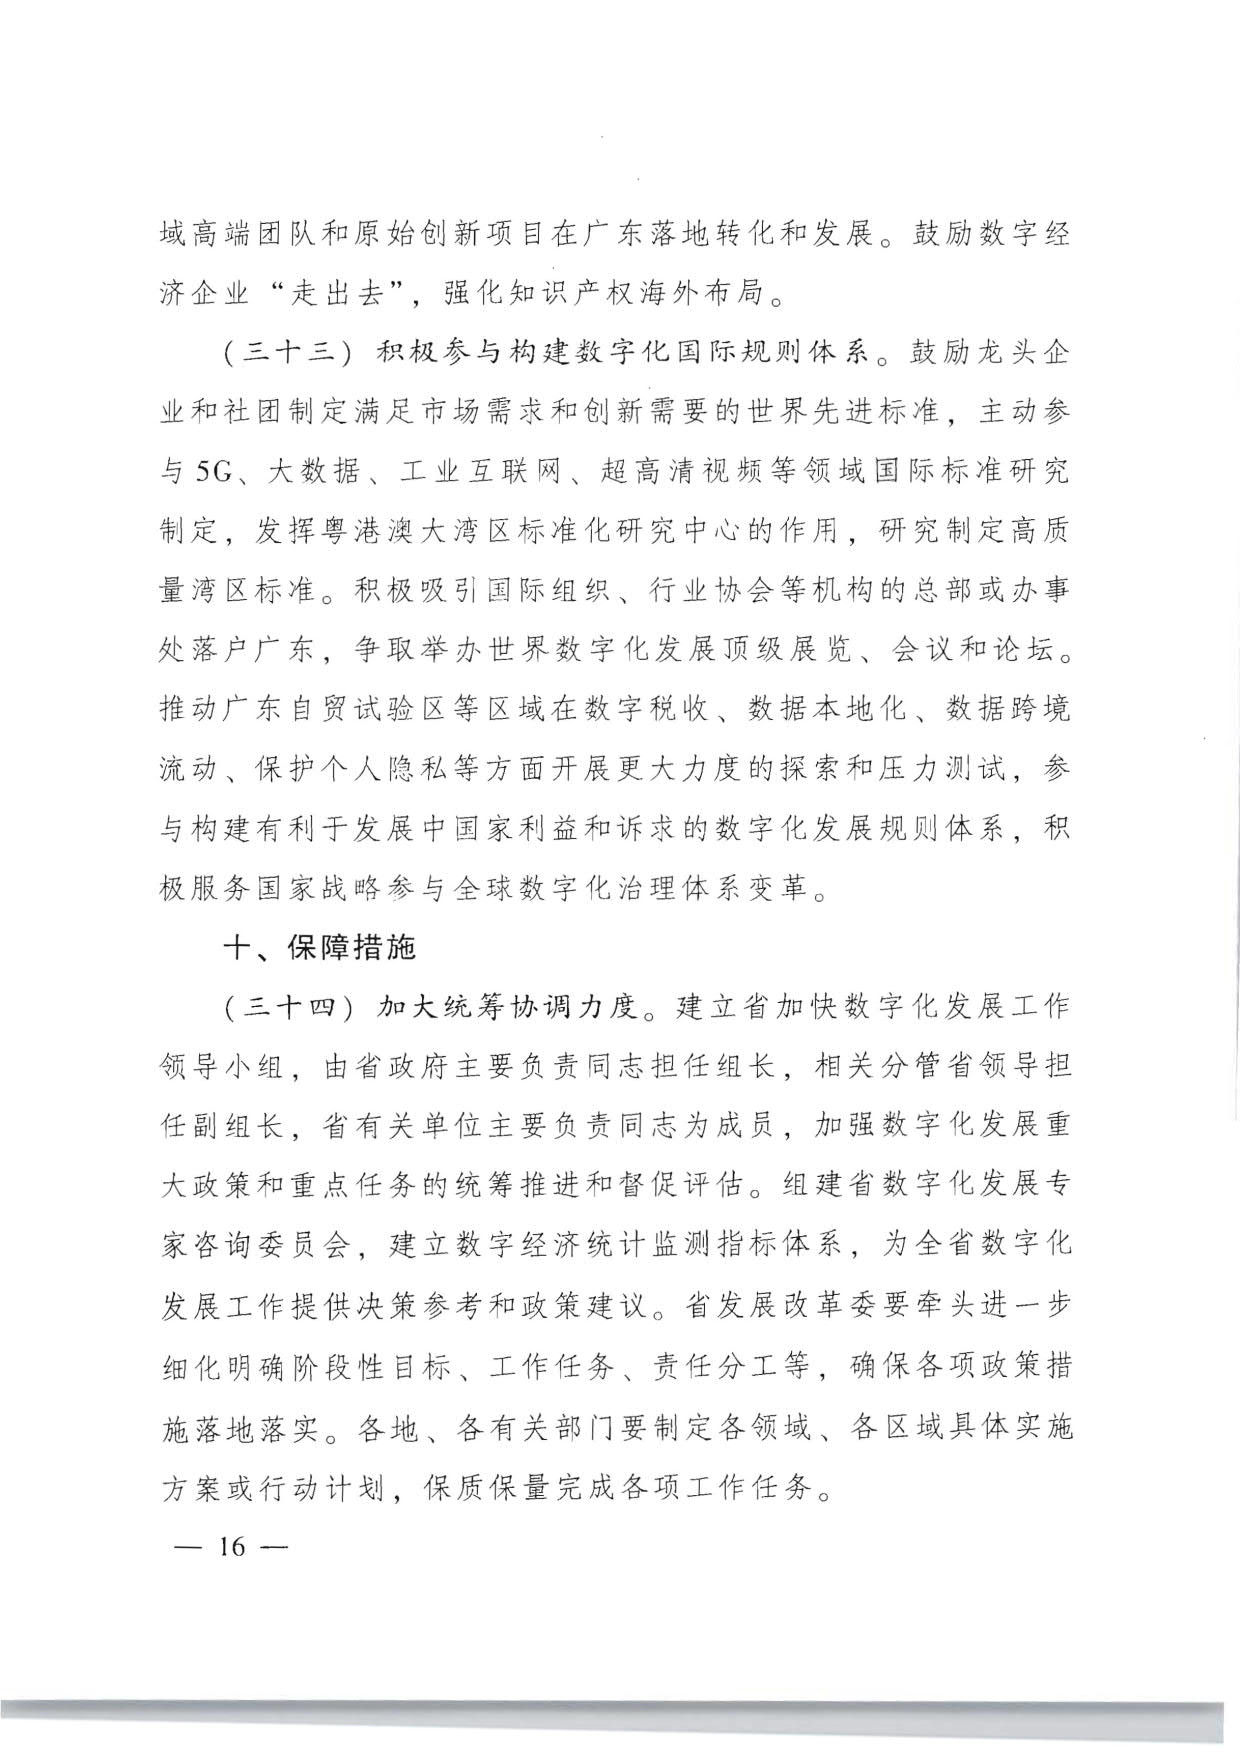 广东省人民政府关于加快数字化发展的意见_16.jpg